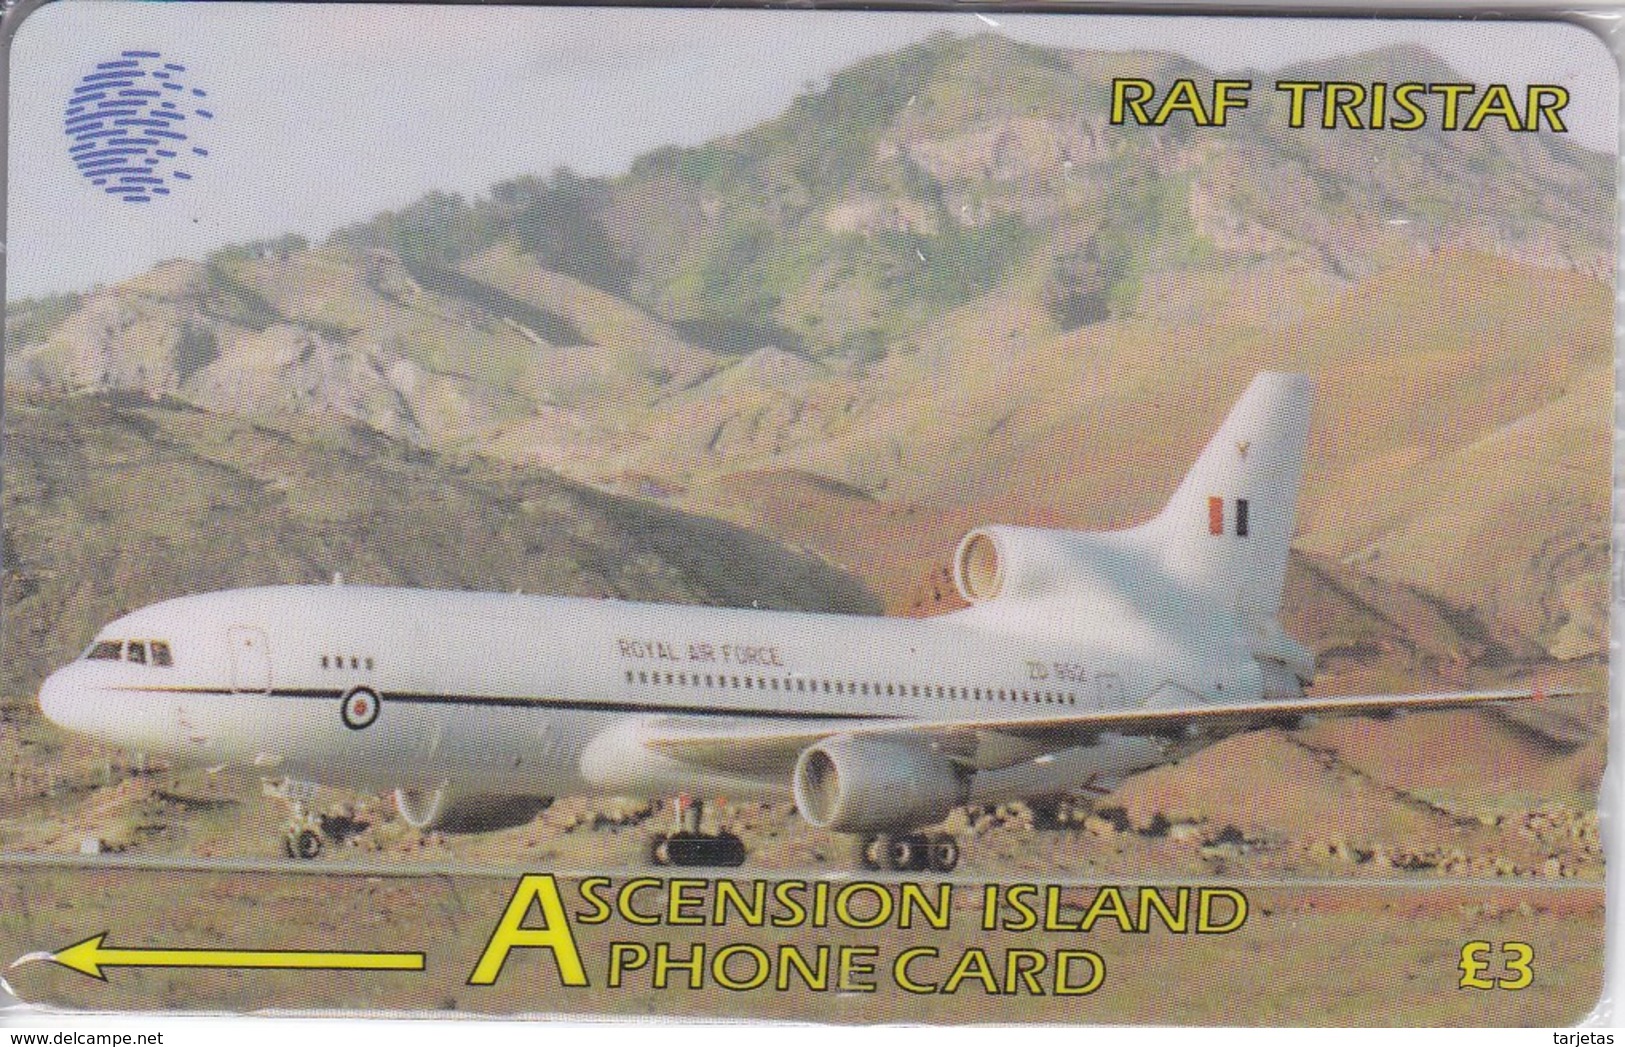 TARJETA DE ASCENSION ISLANDS DE UN AVION RAF TRISTAR 134CASC (NUEVA-MINT) - Ascension